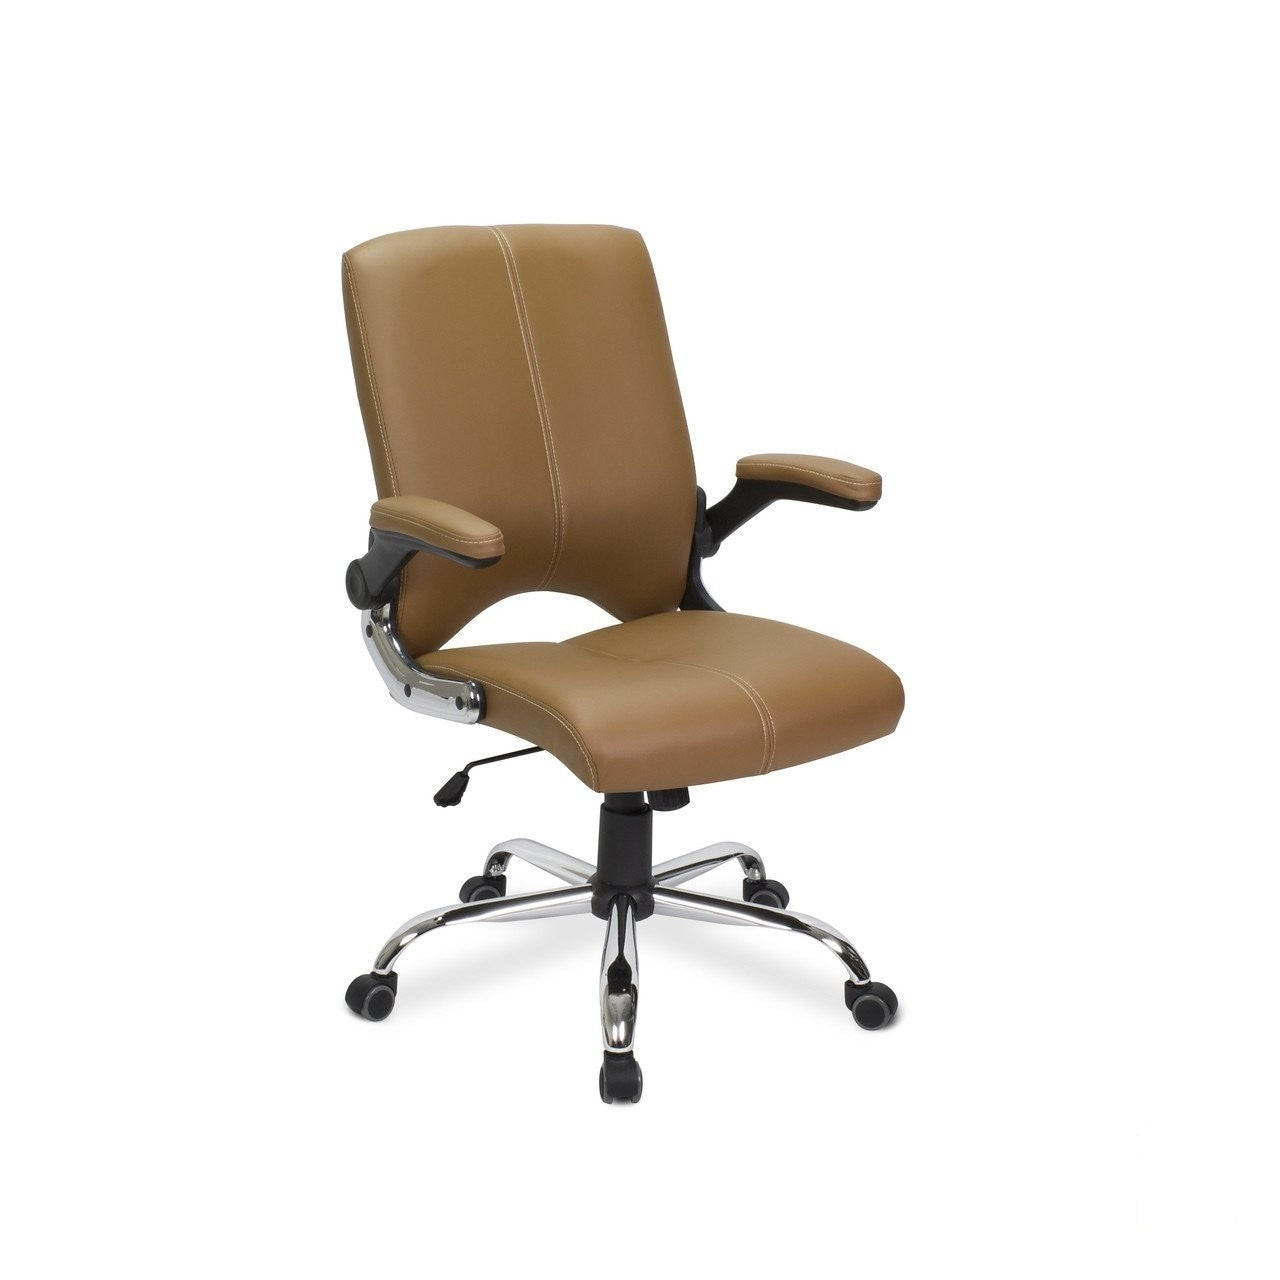 Mayakoba Mayakoba Versa Customer Chair Customer & Waiting Chairs - ChairsThatGive